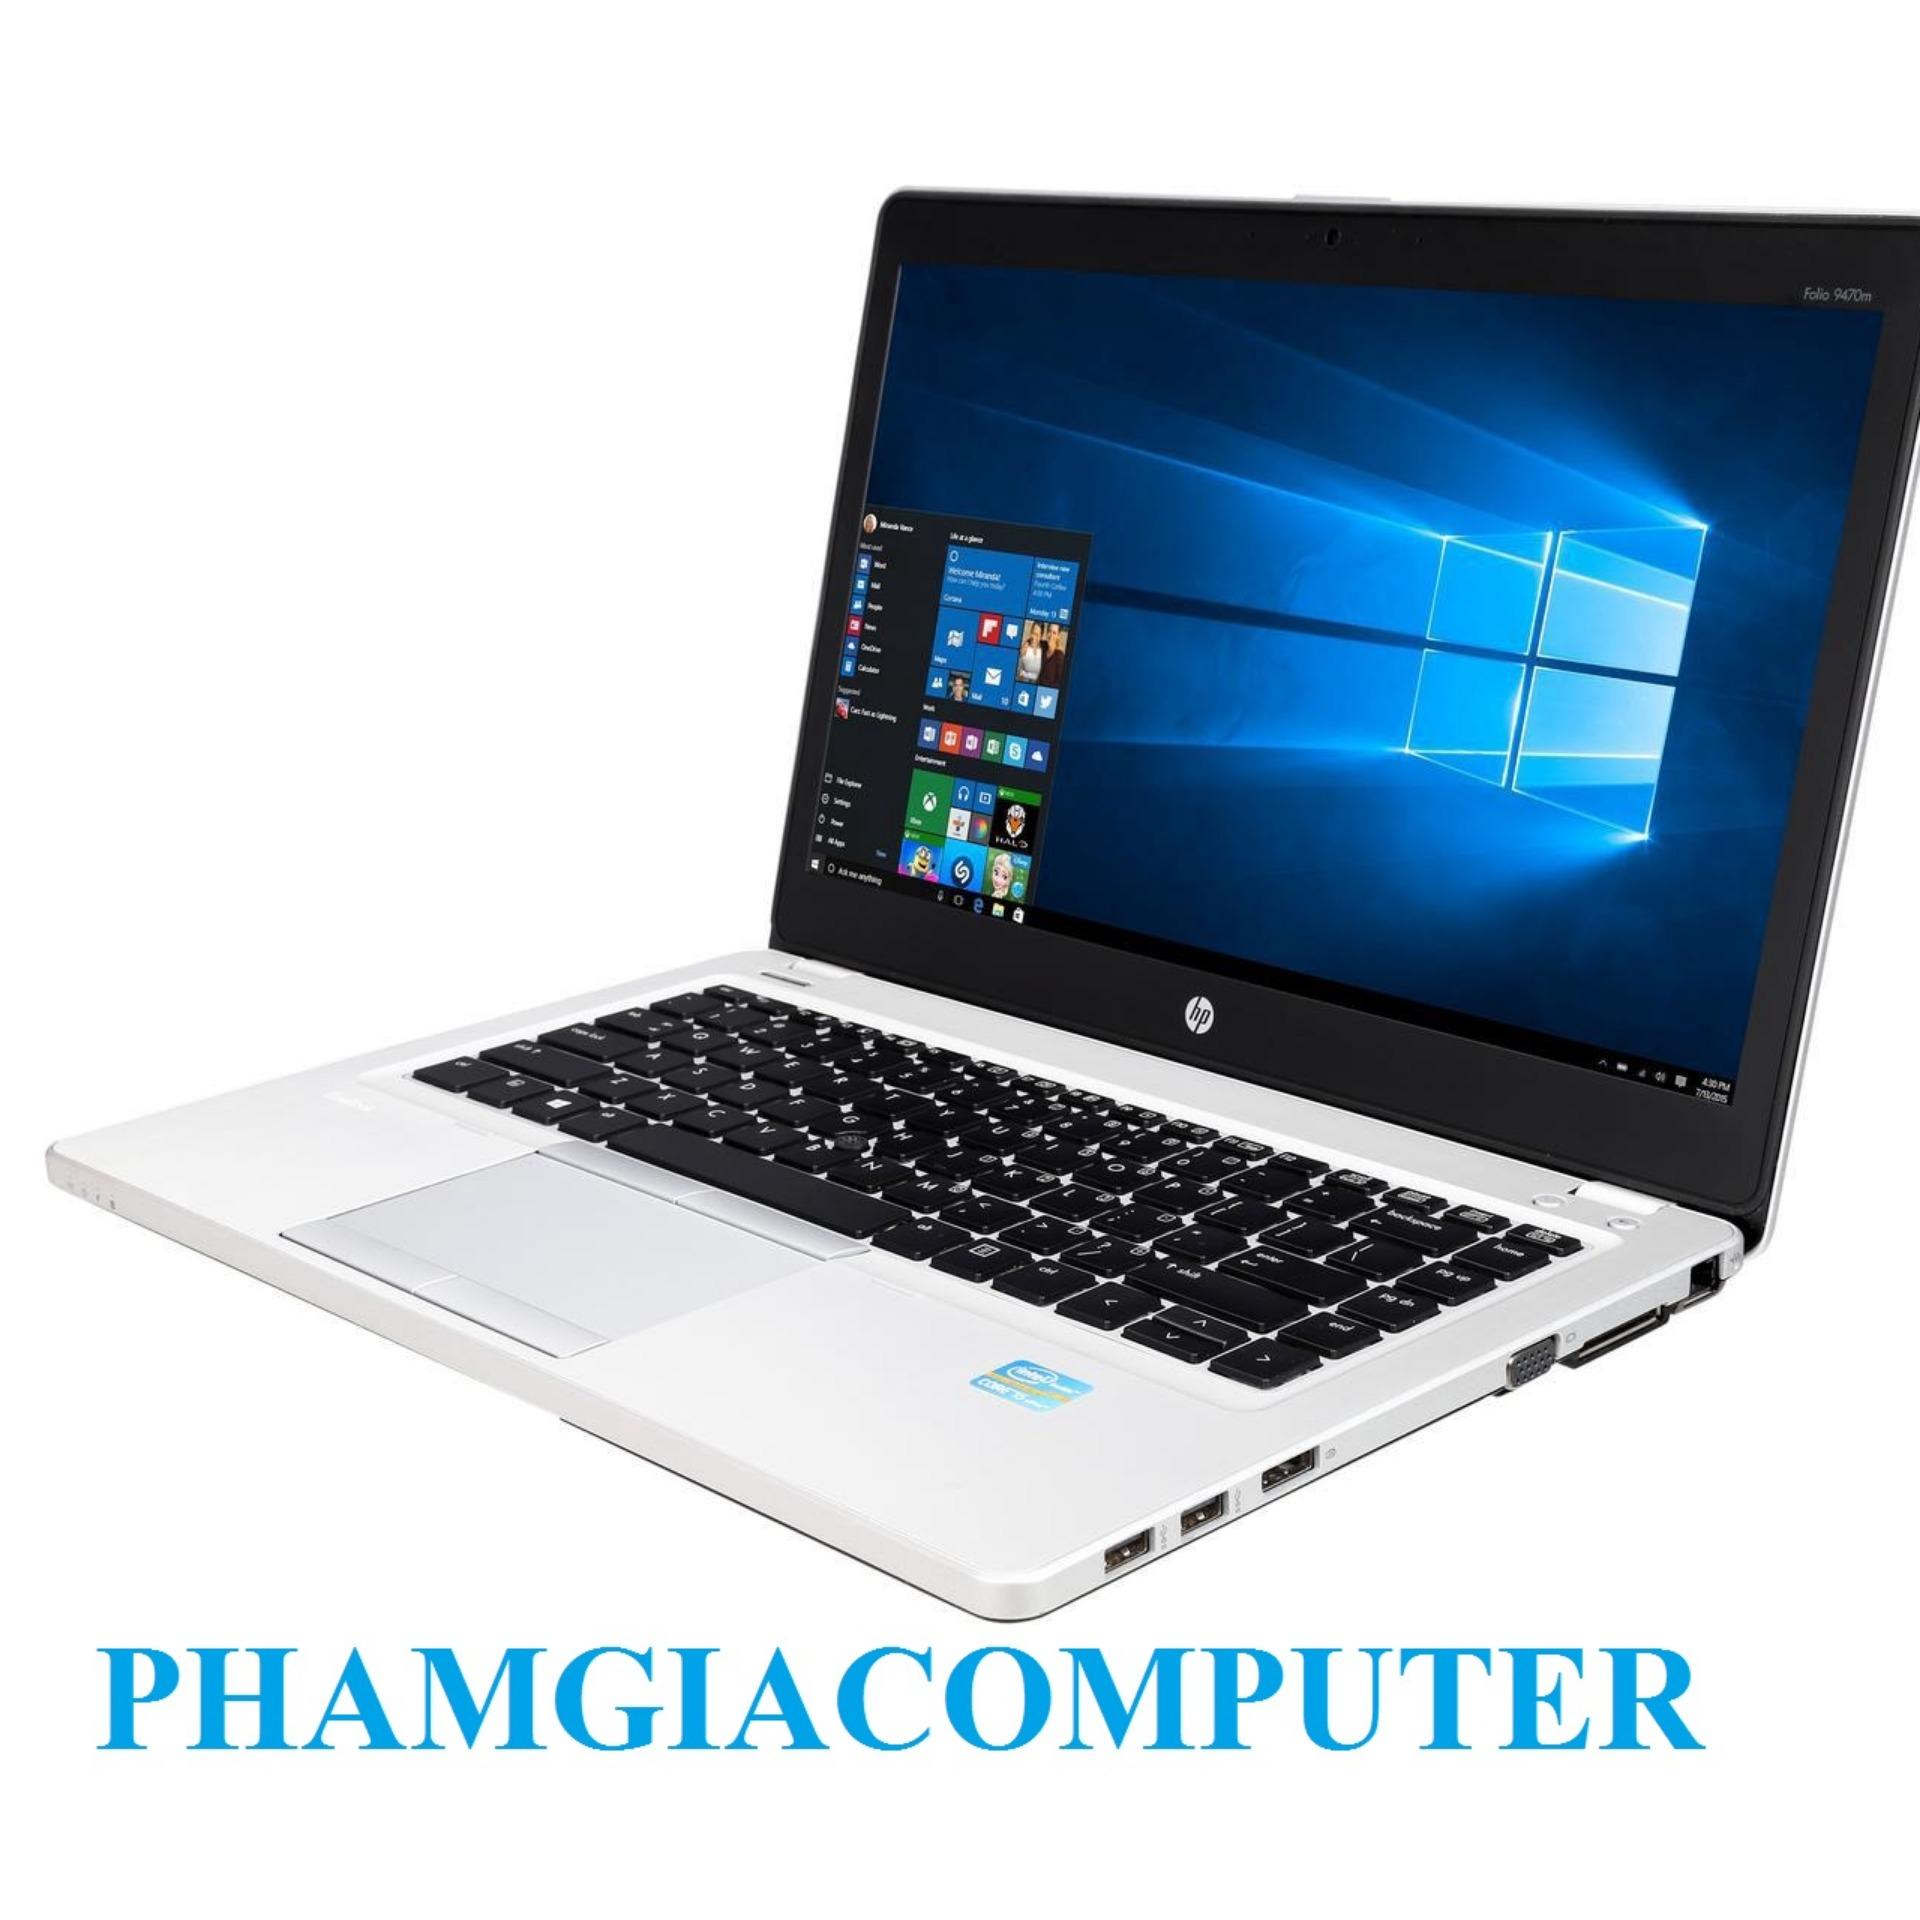 LAPTOP HP FOLIO 9470M Core i7 3667u Ram3 8G SSD 128G 14in Ultrabook siêu mỏng nhẹ 1.6Kg-Hàng nhập khẩu-Tặng Balo,...